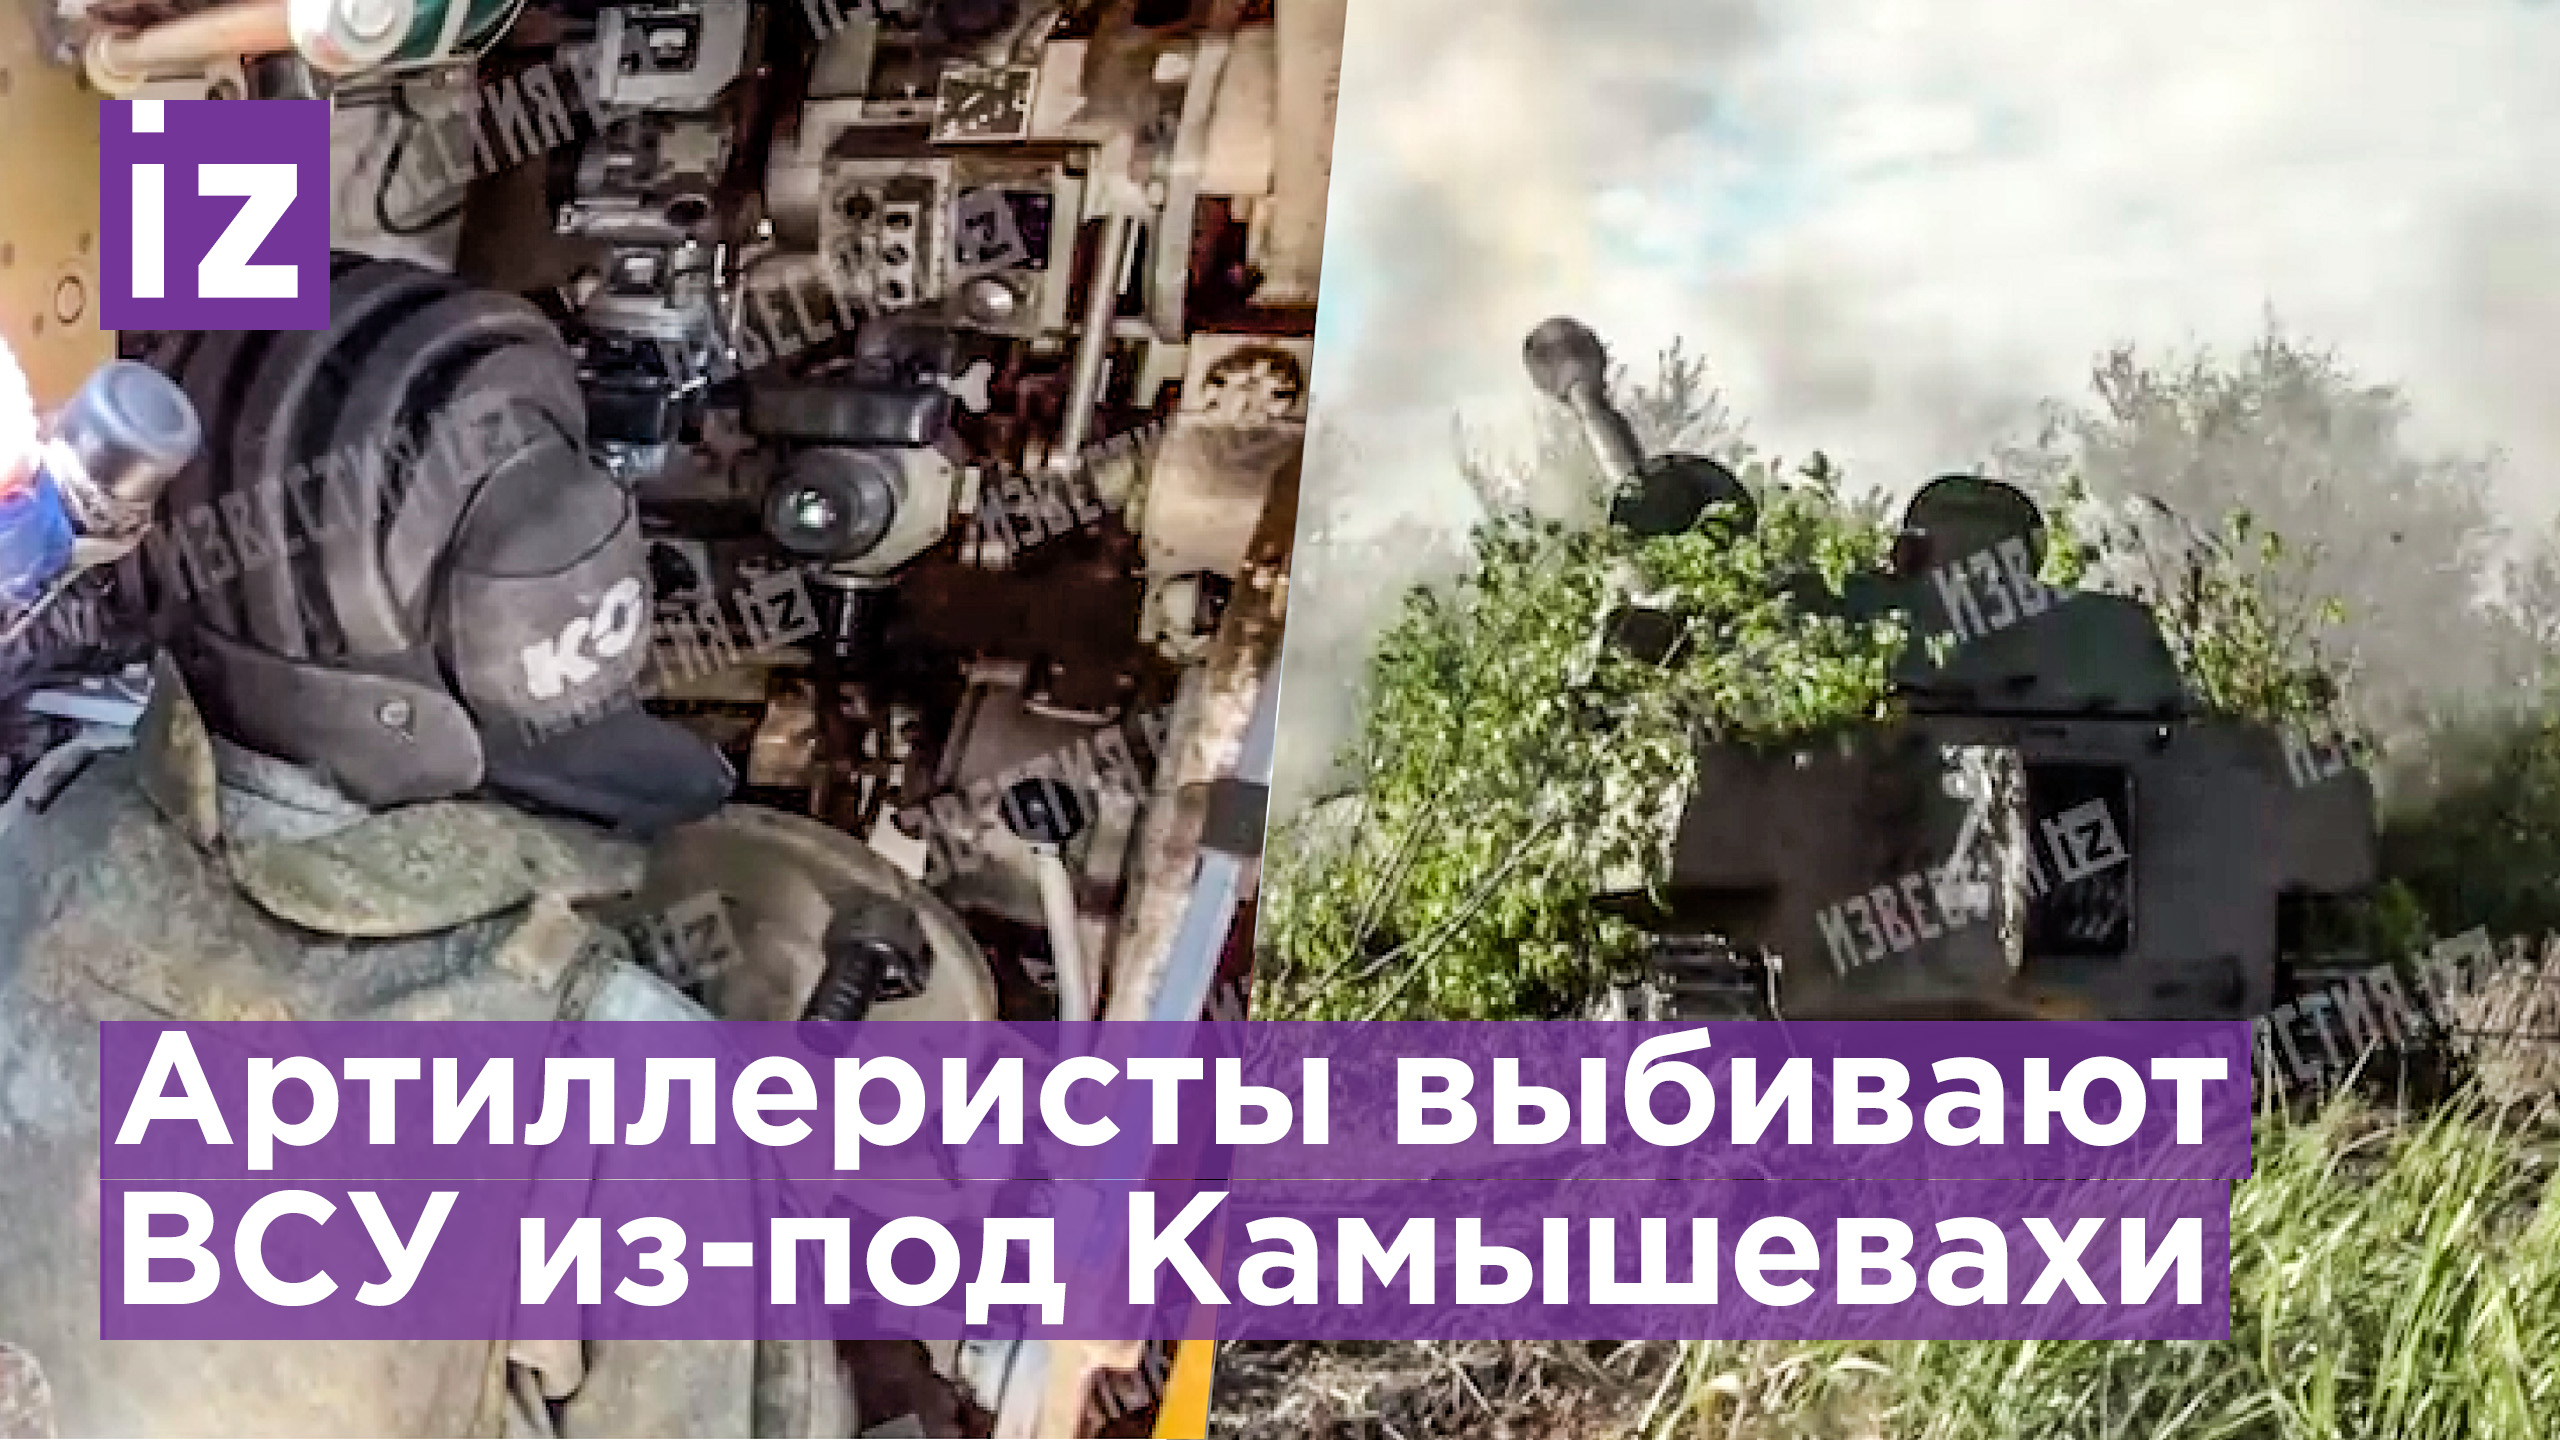 Как артиллеристы выбивают ВСУ с занятых позиций в районе Камышевахи в ЛНР / Известия